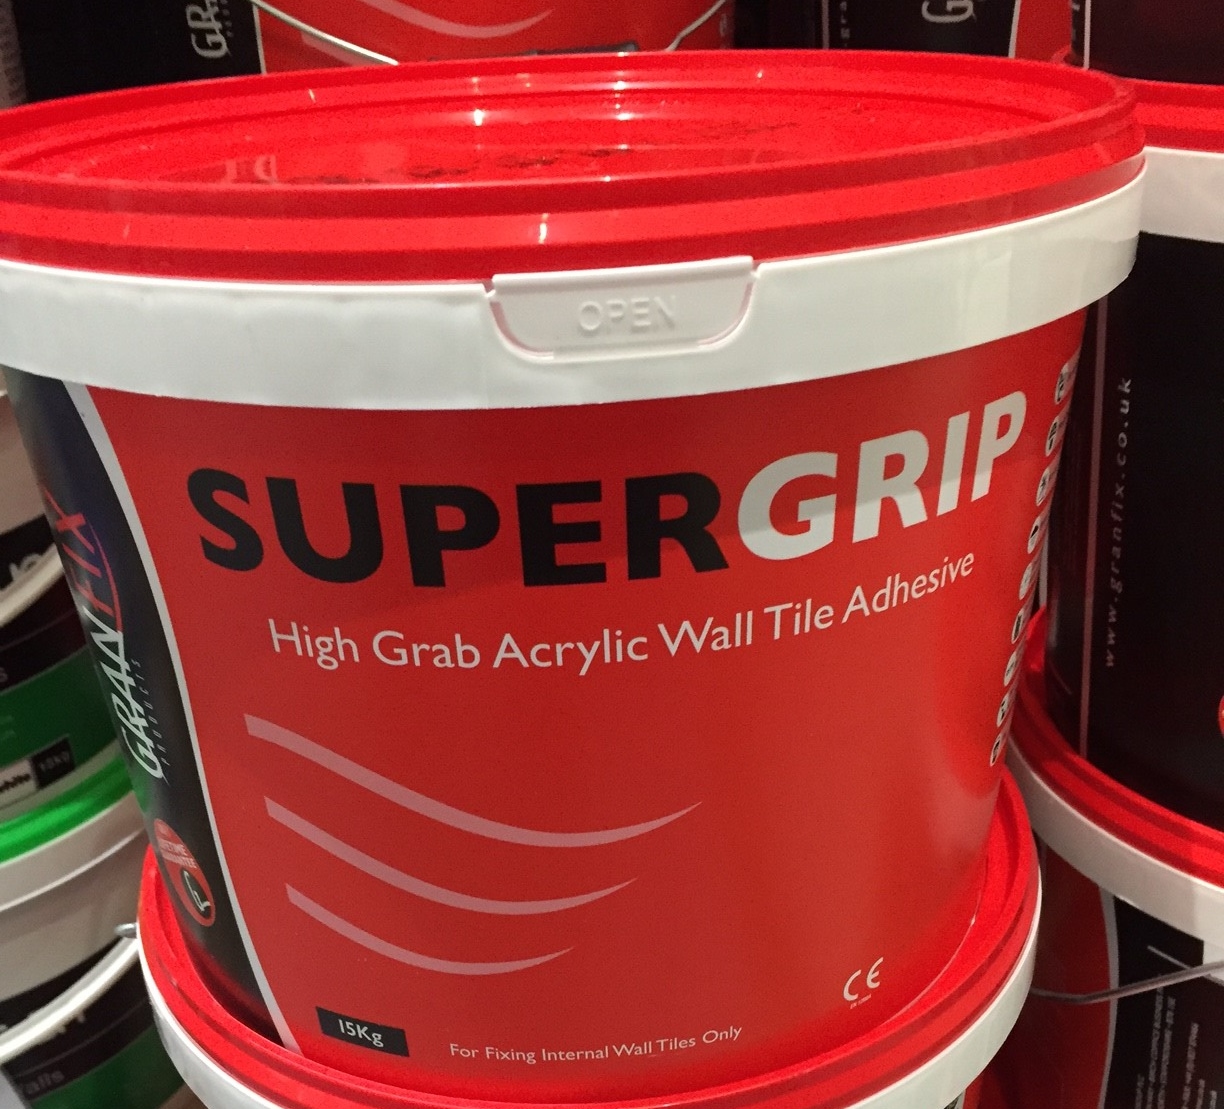 granfix-super-grip